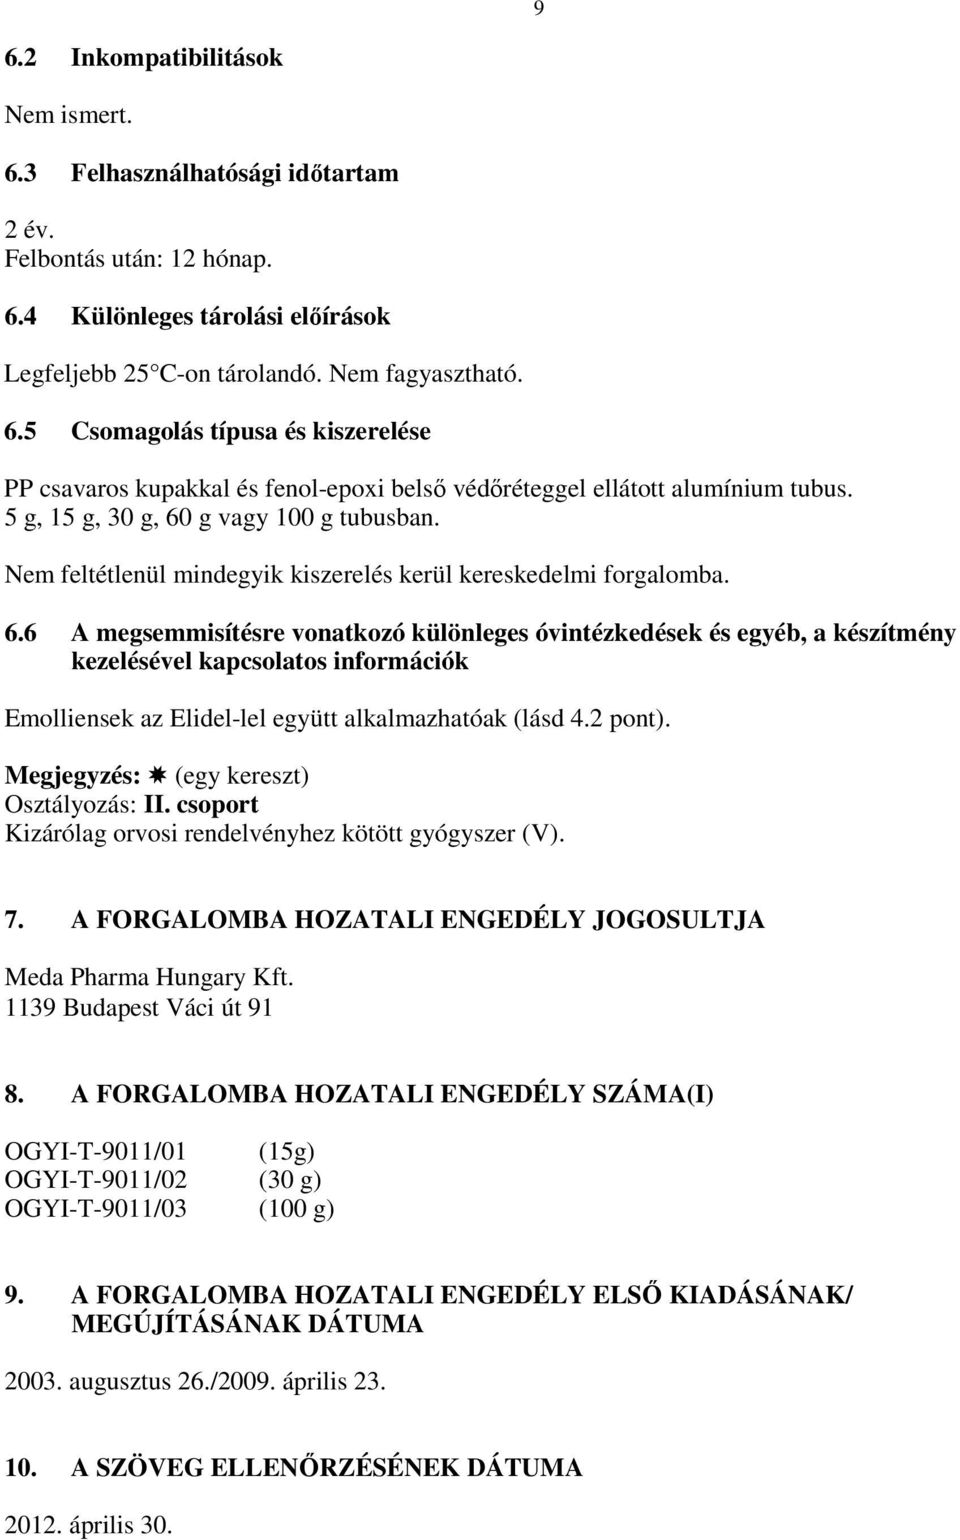 2 pont). Megjegyzés: (egy kereszt) Osztályozás: II. csoport Kizárólag orvosi rendelvényhez kötött gyógyszer (V). 7. A FORGALOMBA HOZATALI ENGEDÉLY JOGOSULTJA Meda Pharma Hungary Kft.